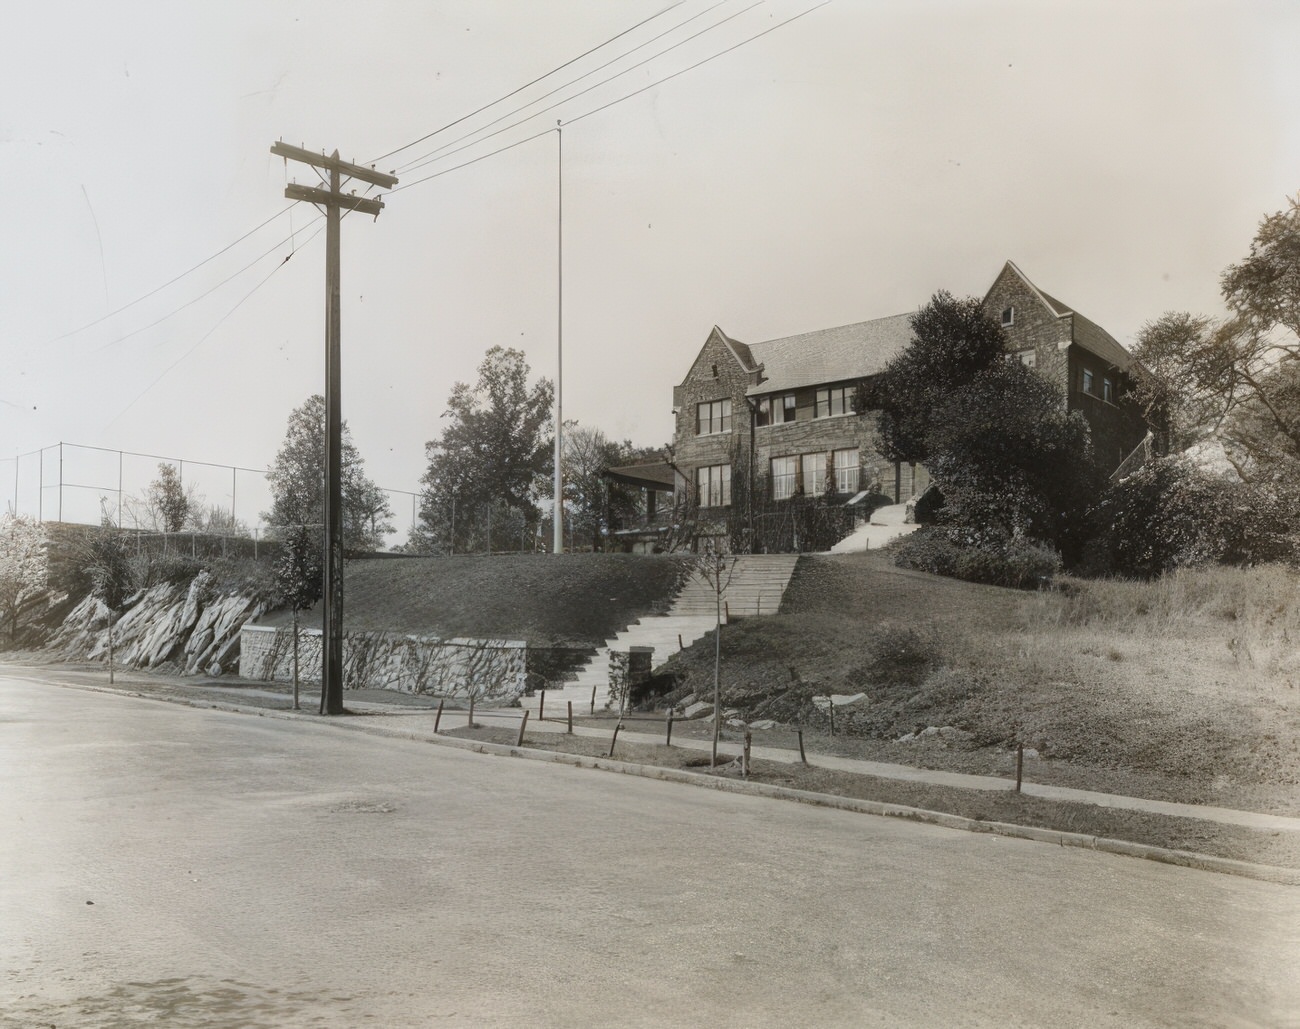 Barnard School For Boys, Now The Horace Mann School, Circa 1920.